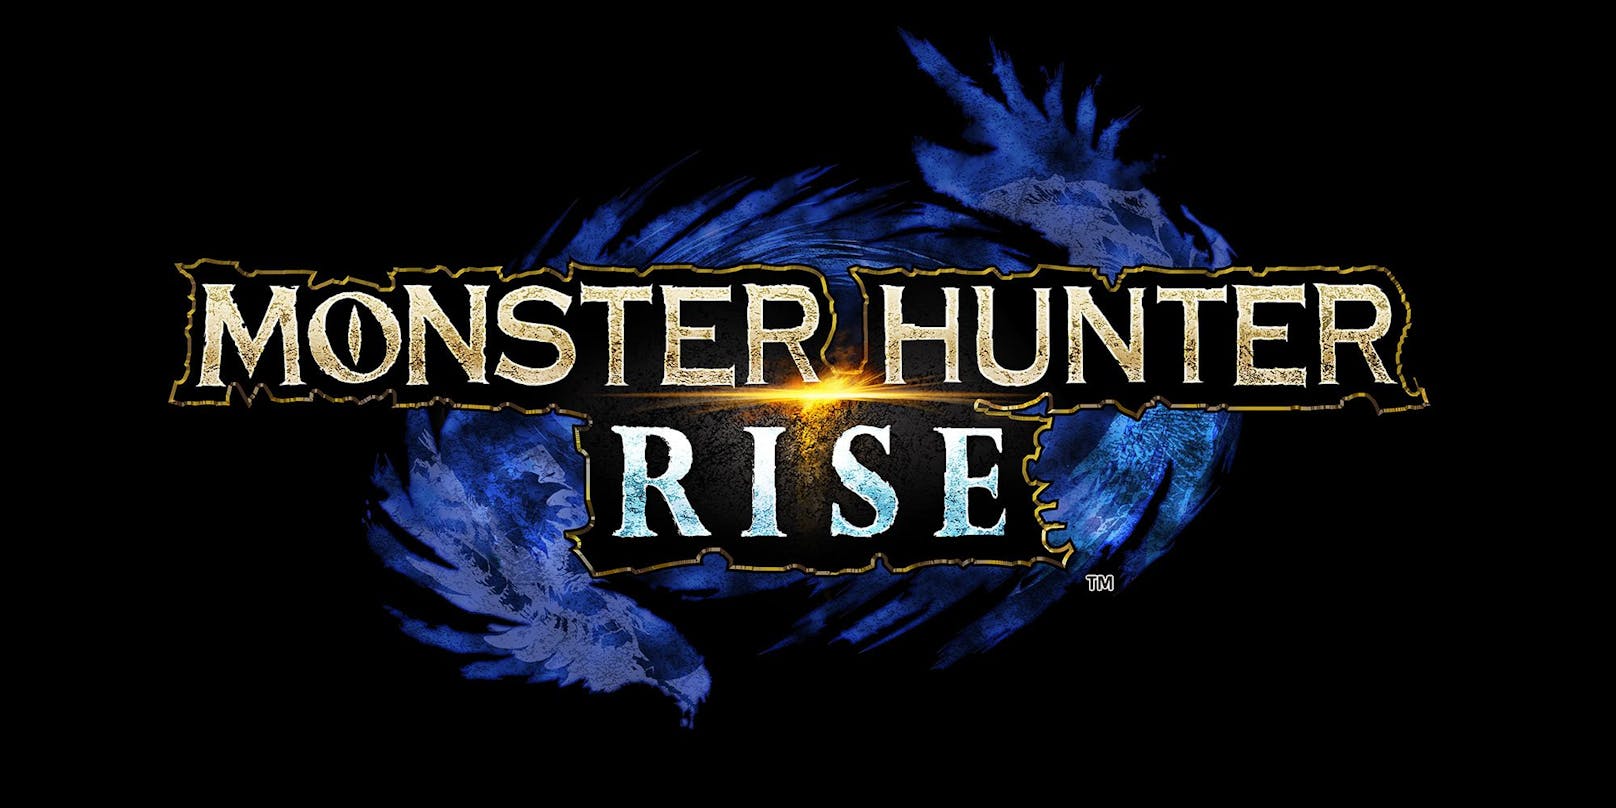 Technisch überrascht "Monster Hunter Rise" auf der Switch gewaltig. Schon die normale Spielgrafik ist sehenswert mit schönen Details und wunderbar flüssigen Animationen.